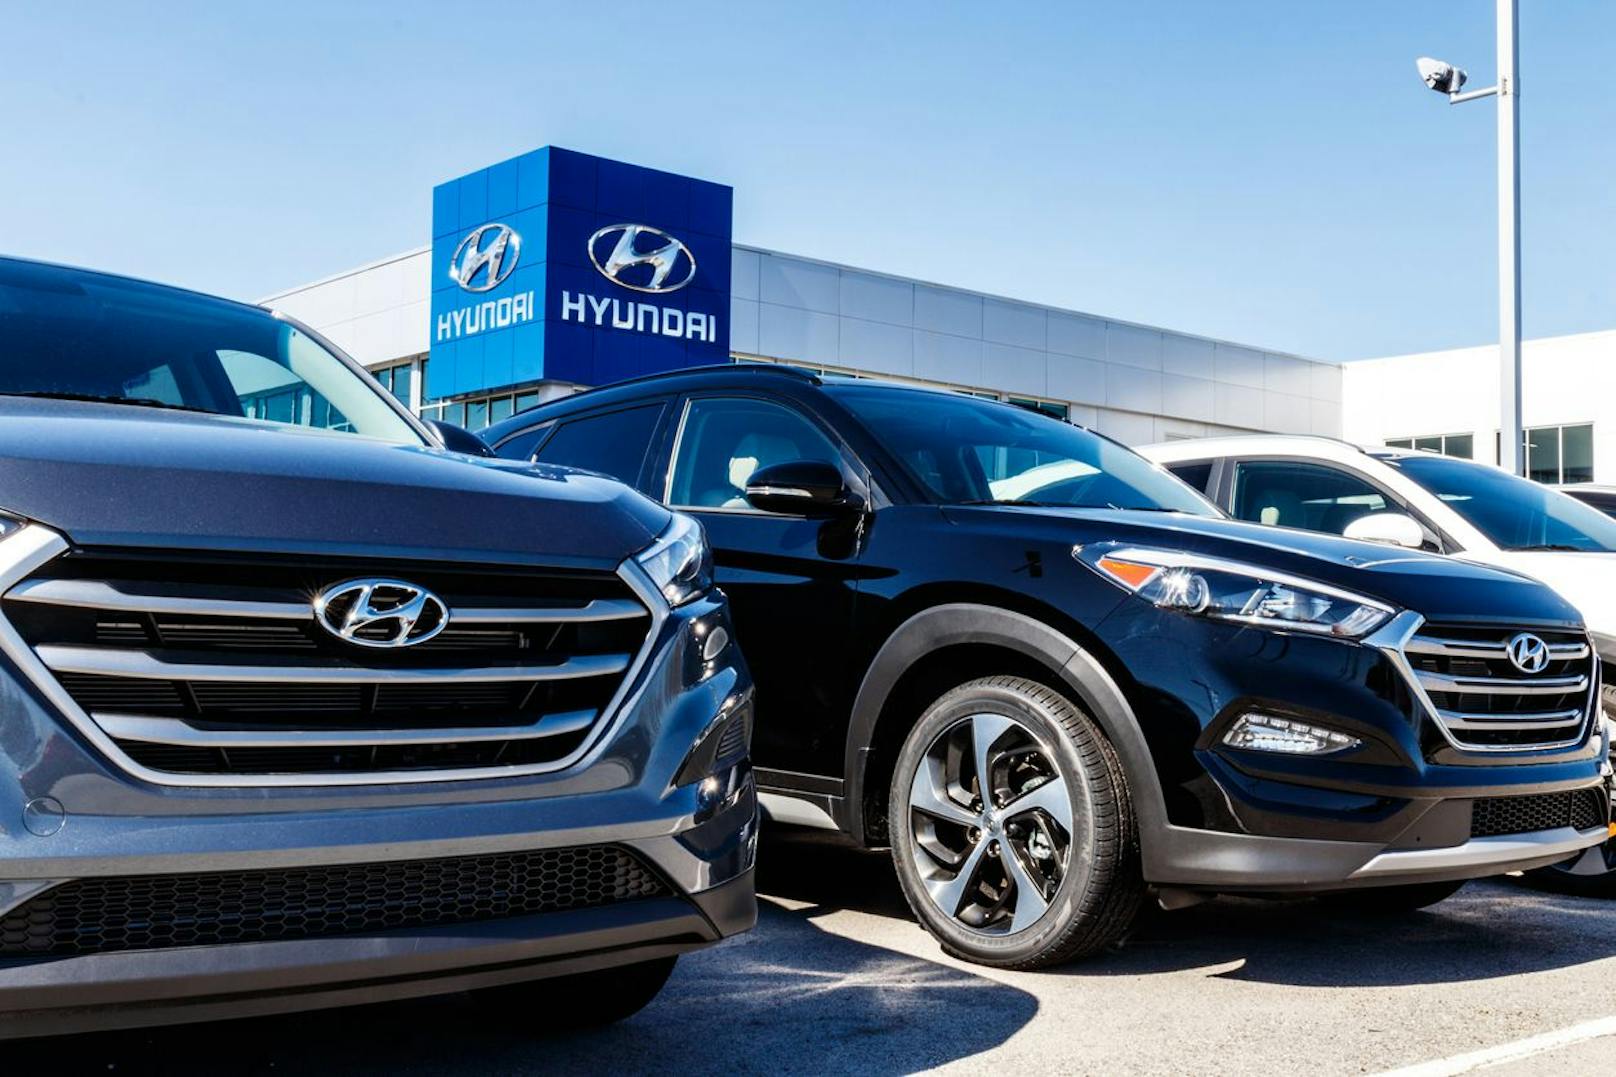 Explodierende Gurte – Hyundai ruft jetzt Autos zurück